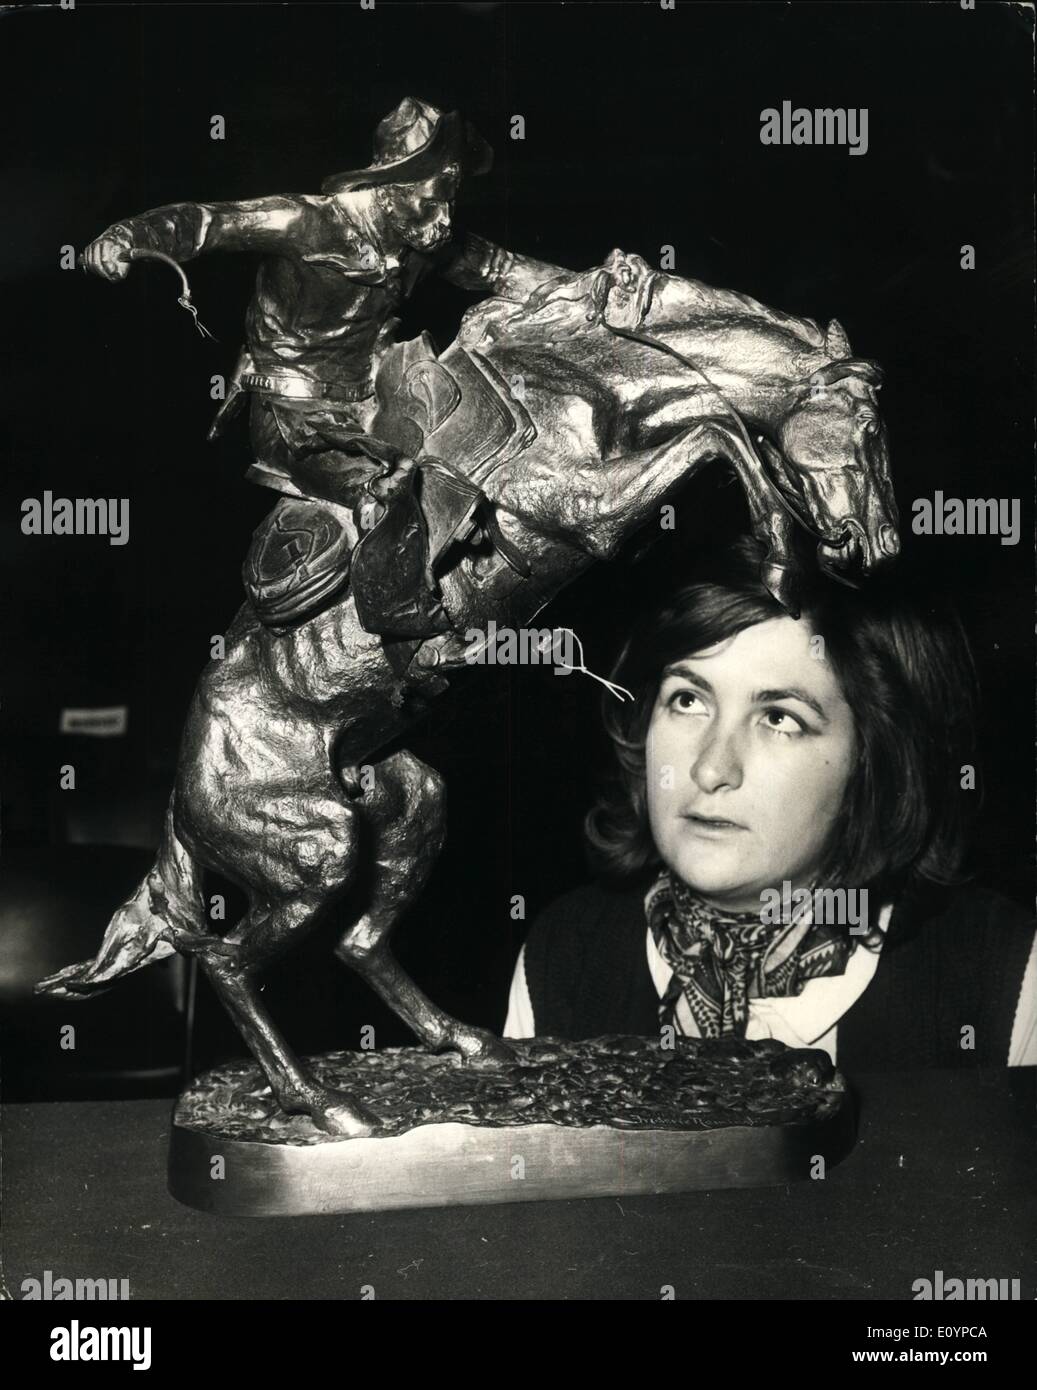 Febbraio 02, 1971 - Vendita di Christie's. Keystone Mostra fotografica di:- Patricia Stirling, di Christie's, guarda la Bronco Buster, un bronzo da Frederick Remington, A.N.A., che è stato venduto per 9.000 gns, a oggi la vendita di Christie'o. Foto Stock